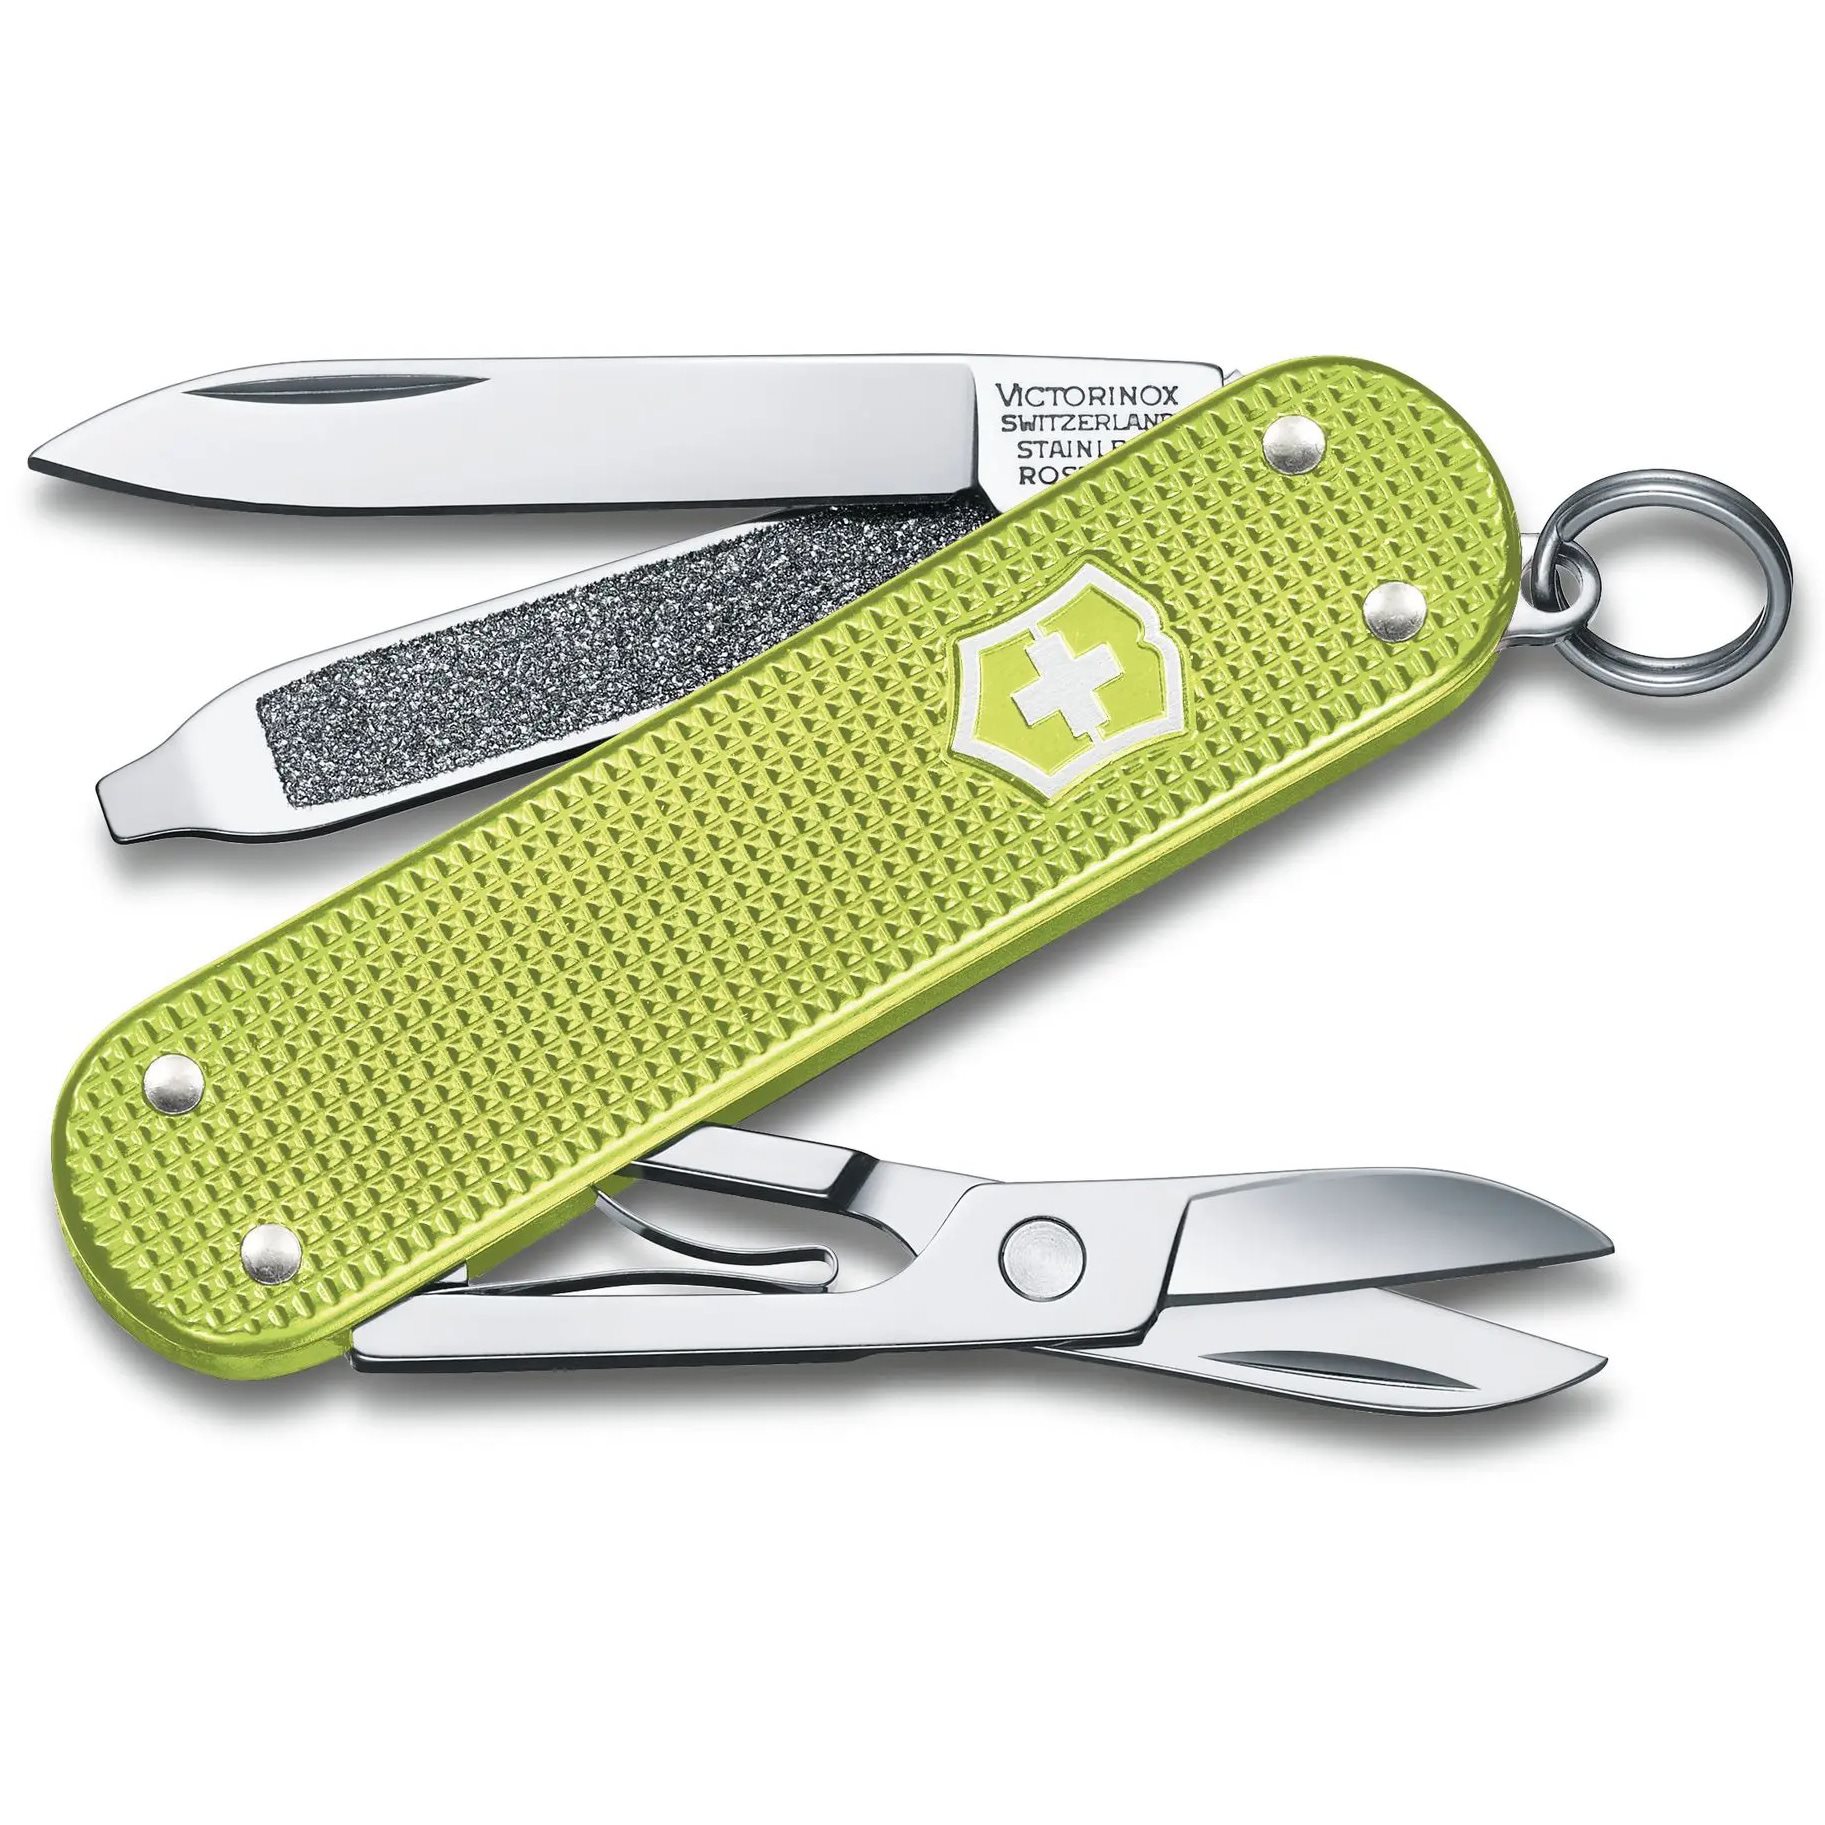 Pocket Knife CLASSIC SD ALOX LIME TWIST VICTORINOX 0.6221.241G L-11